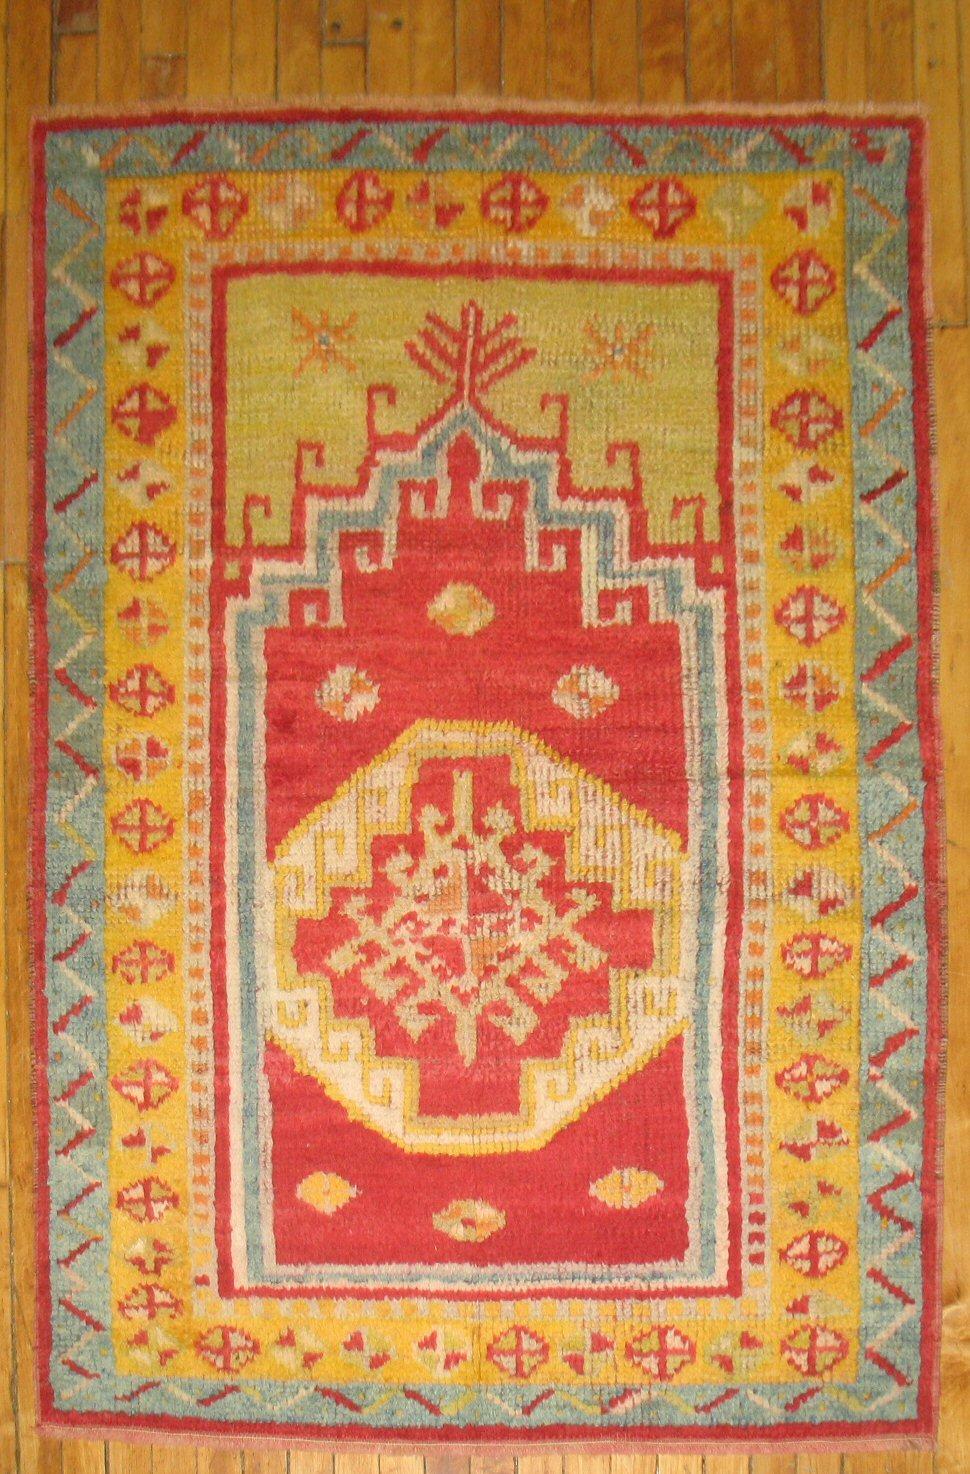 Hand-Woven Vintage Turkish Tulu Rug with Prayer Niche Motif